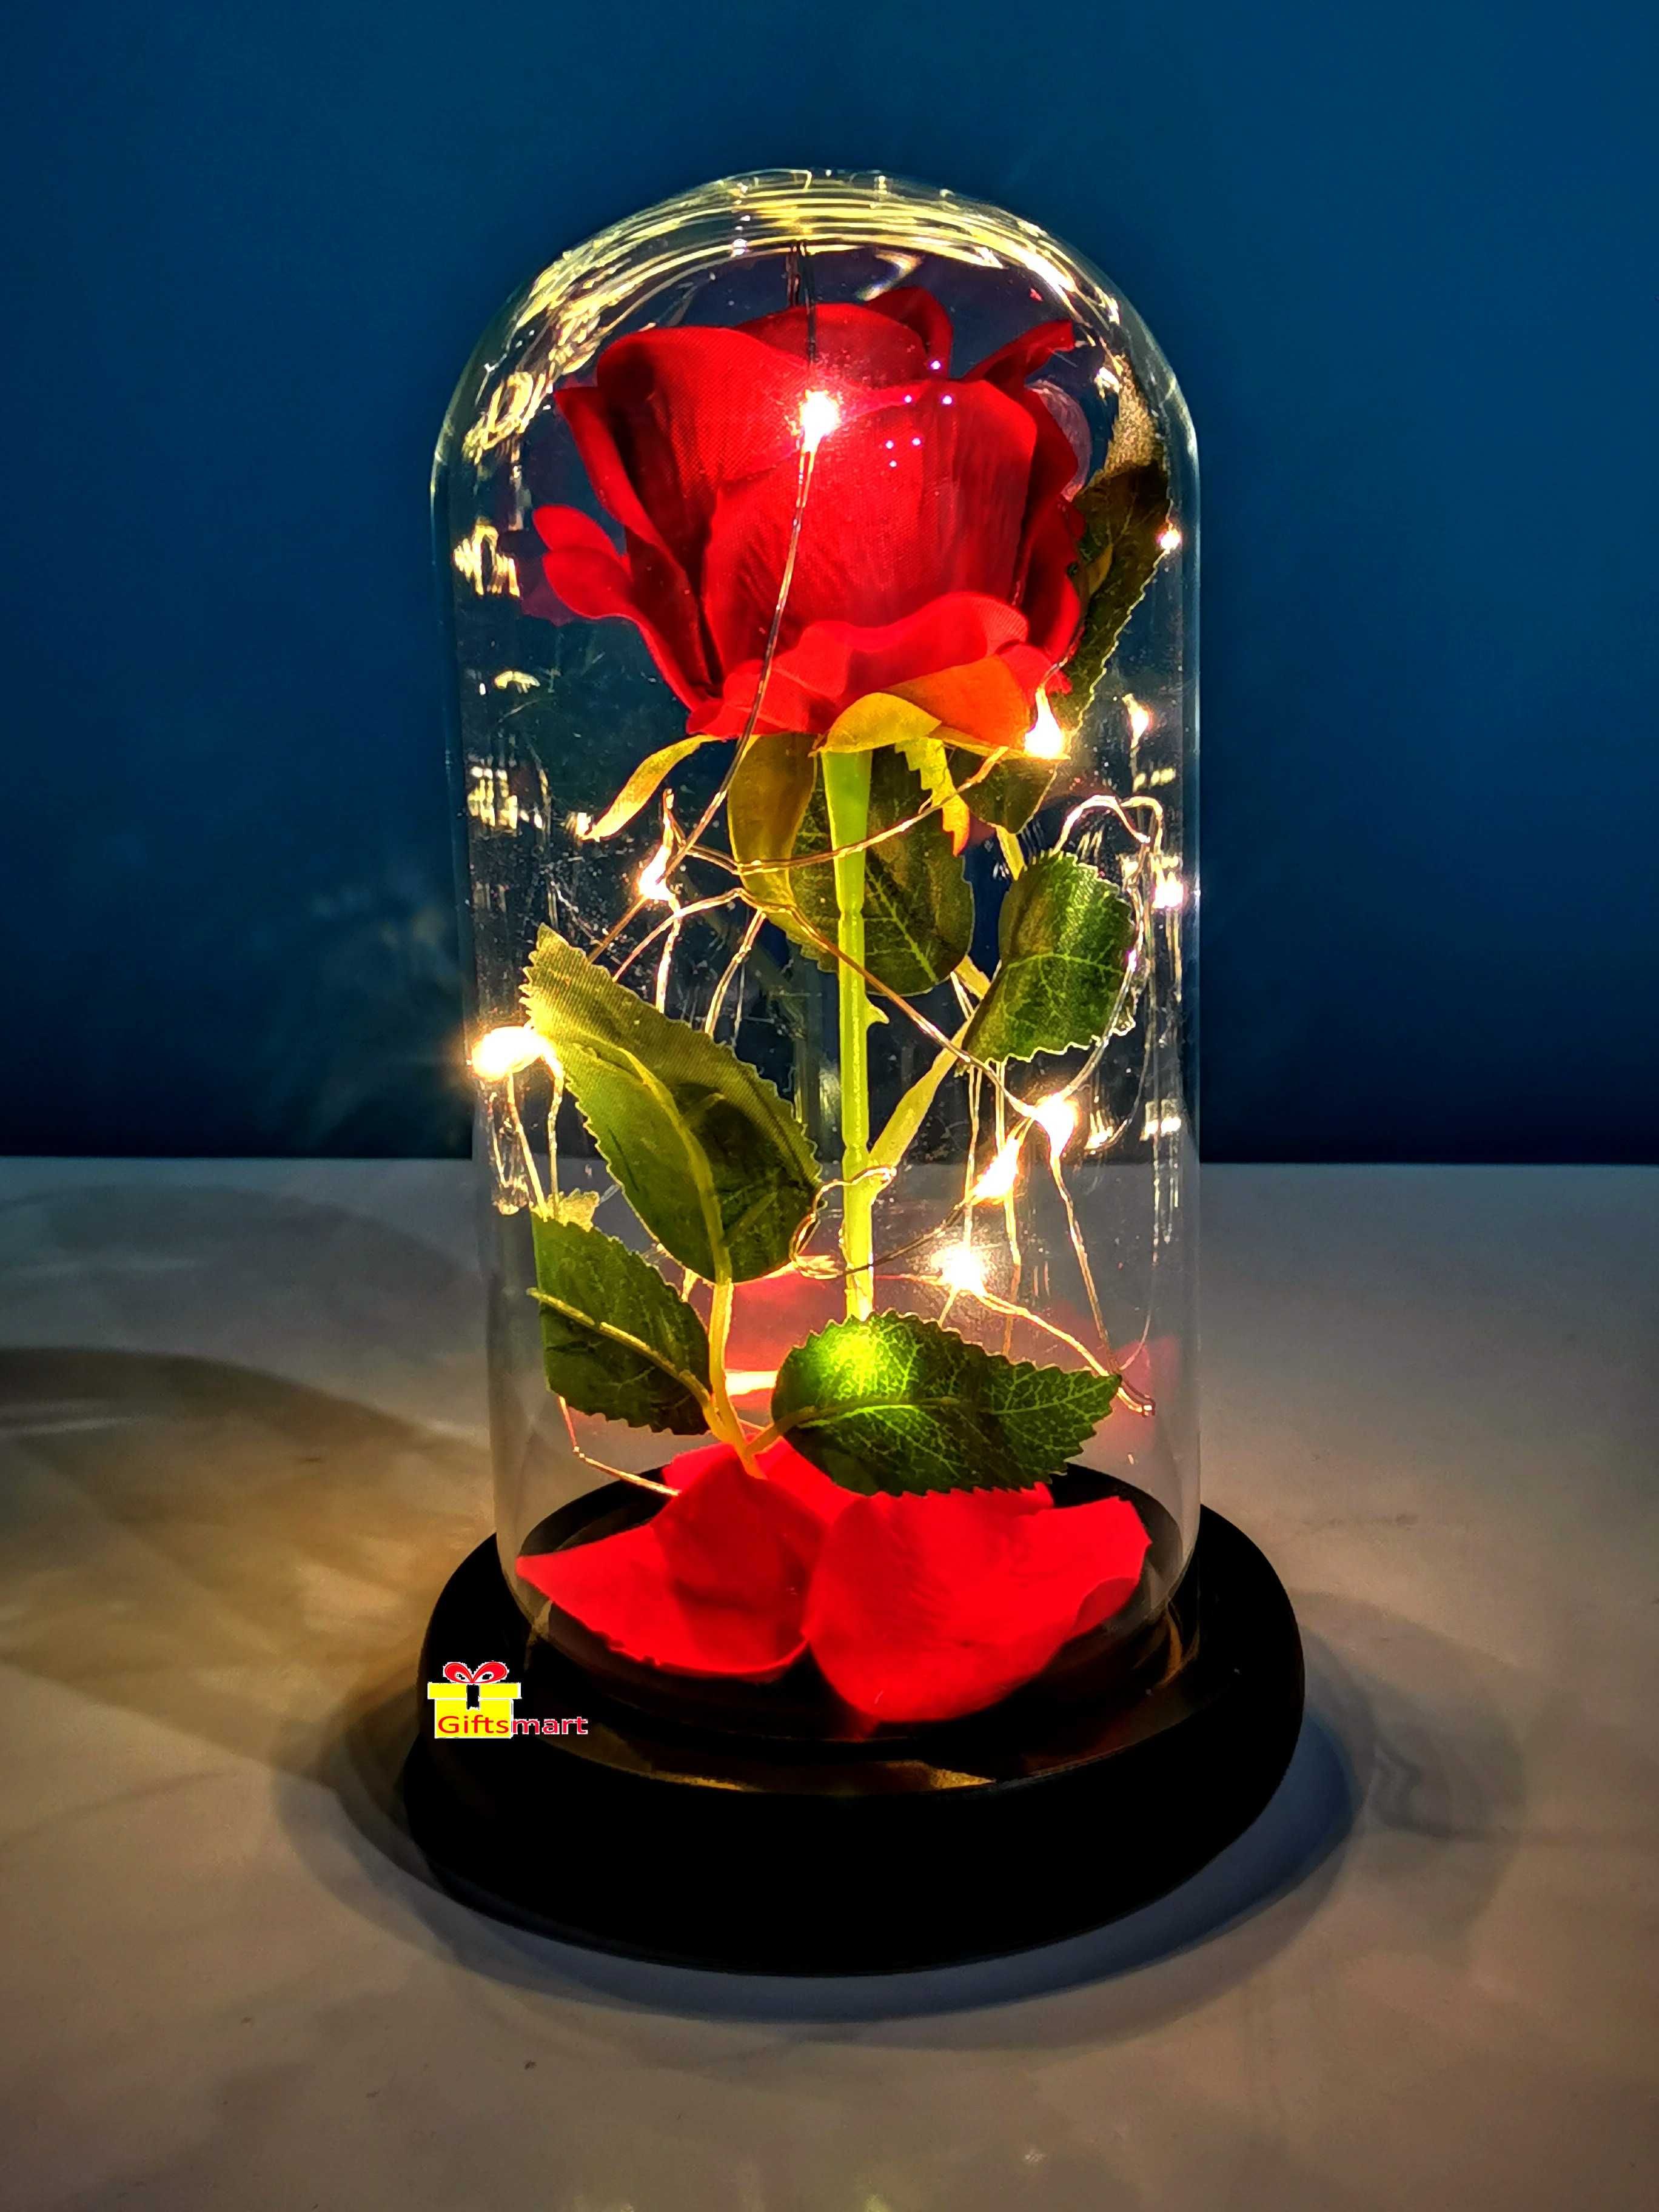 Вечна , неувяхваща роза в стъкленица (светеща) - подарък за жена